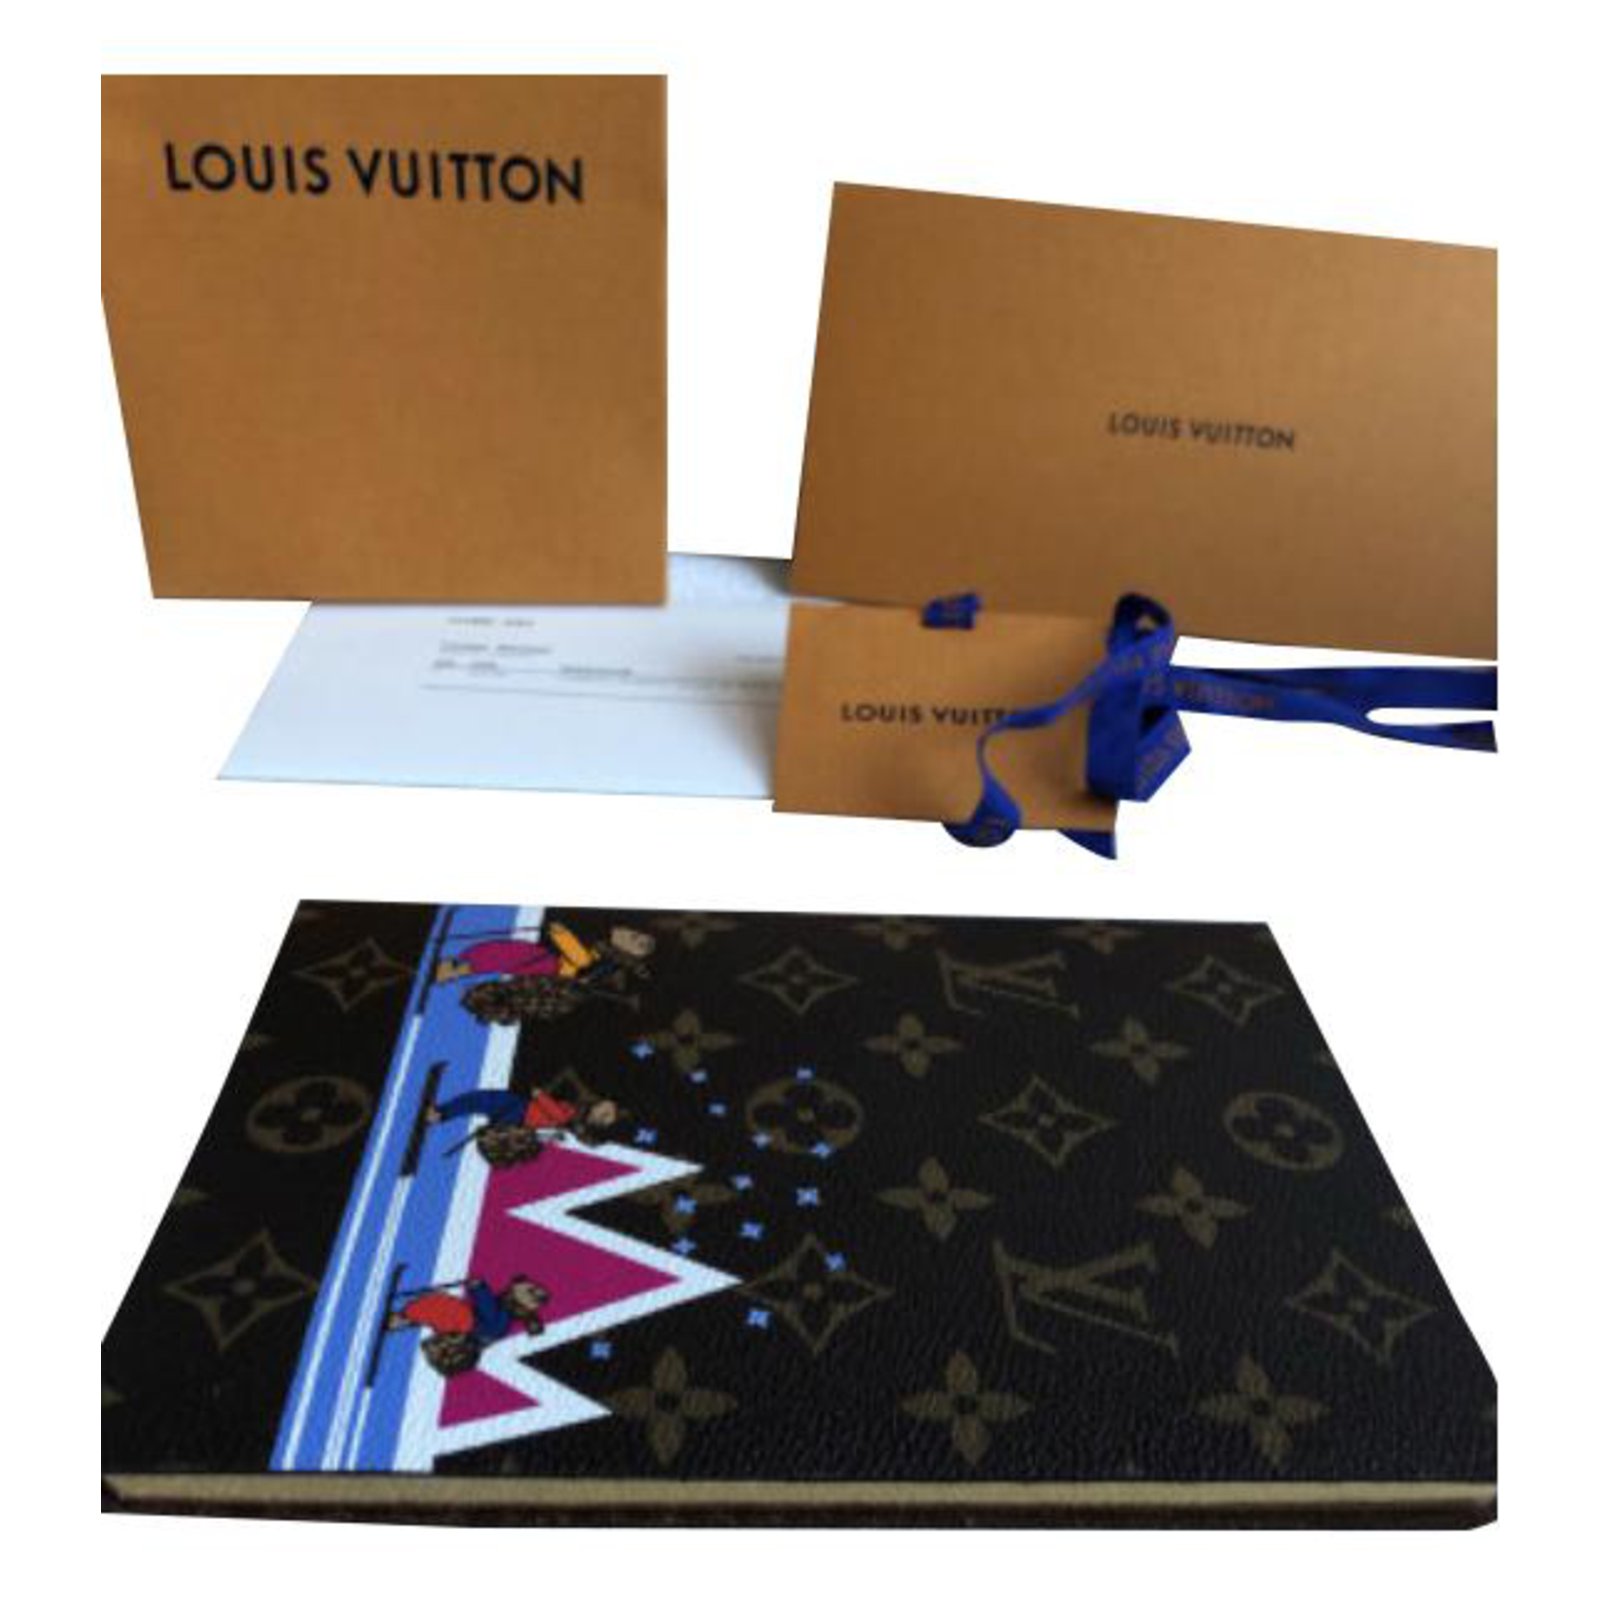 Louis Vuitton Clemence notebook